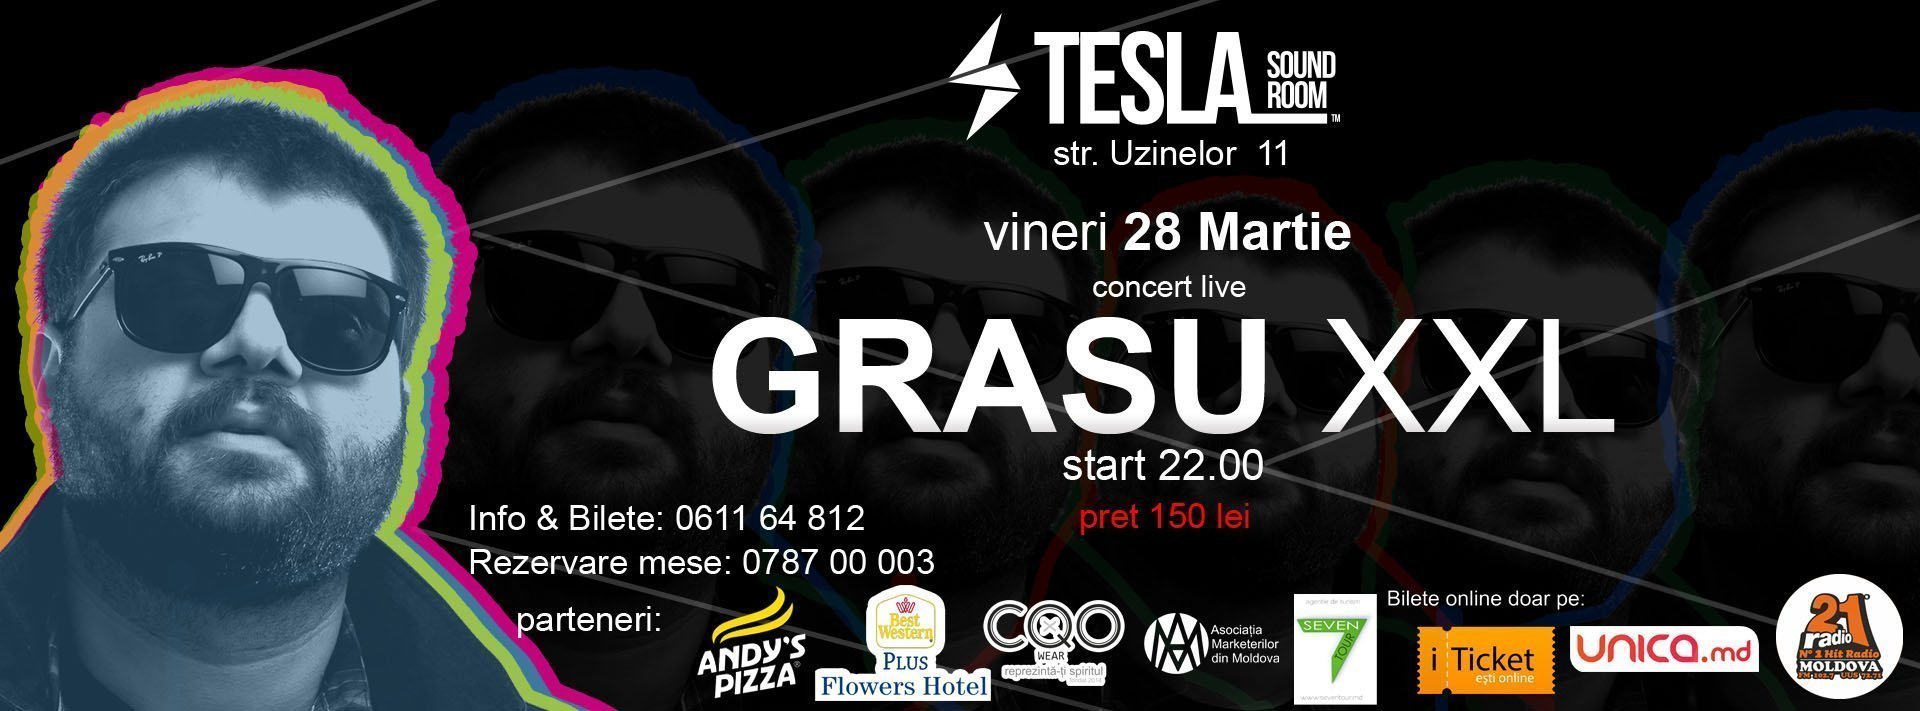 Grasu XXL concert live in Chisinau